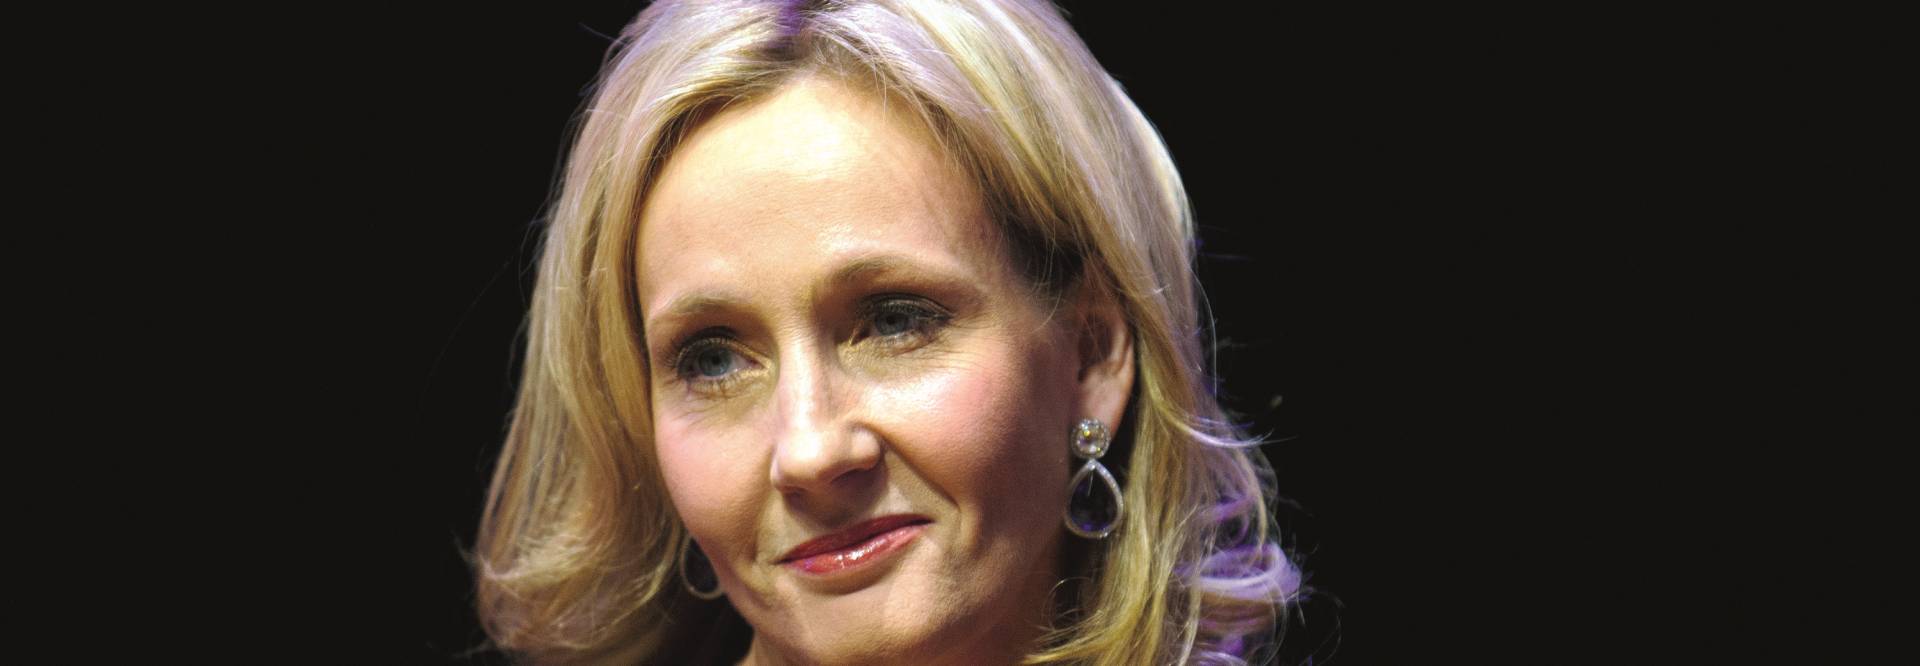 Nova etapa u spisateljskom životu J. K. Rowling